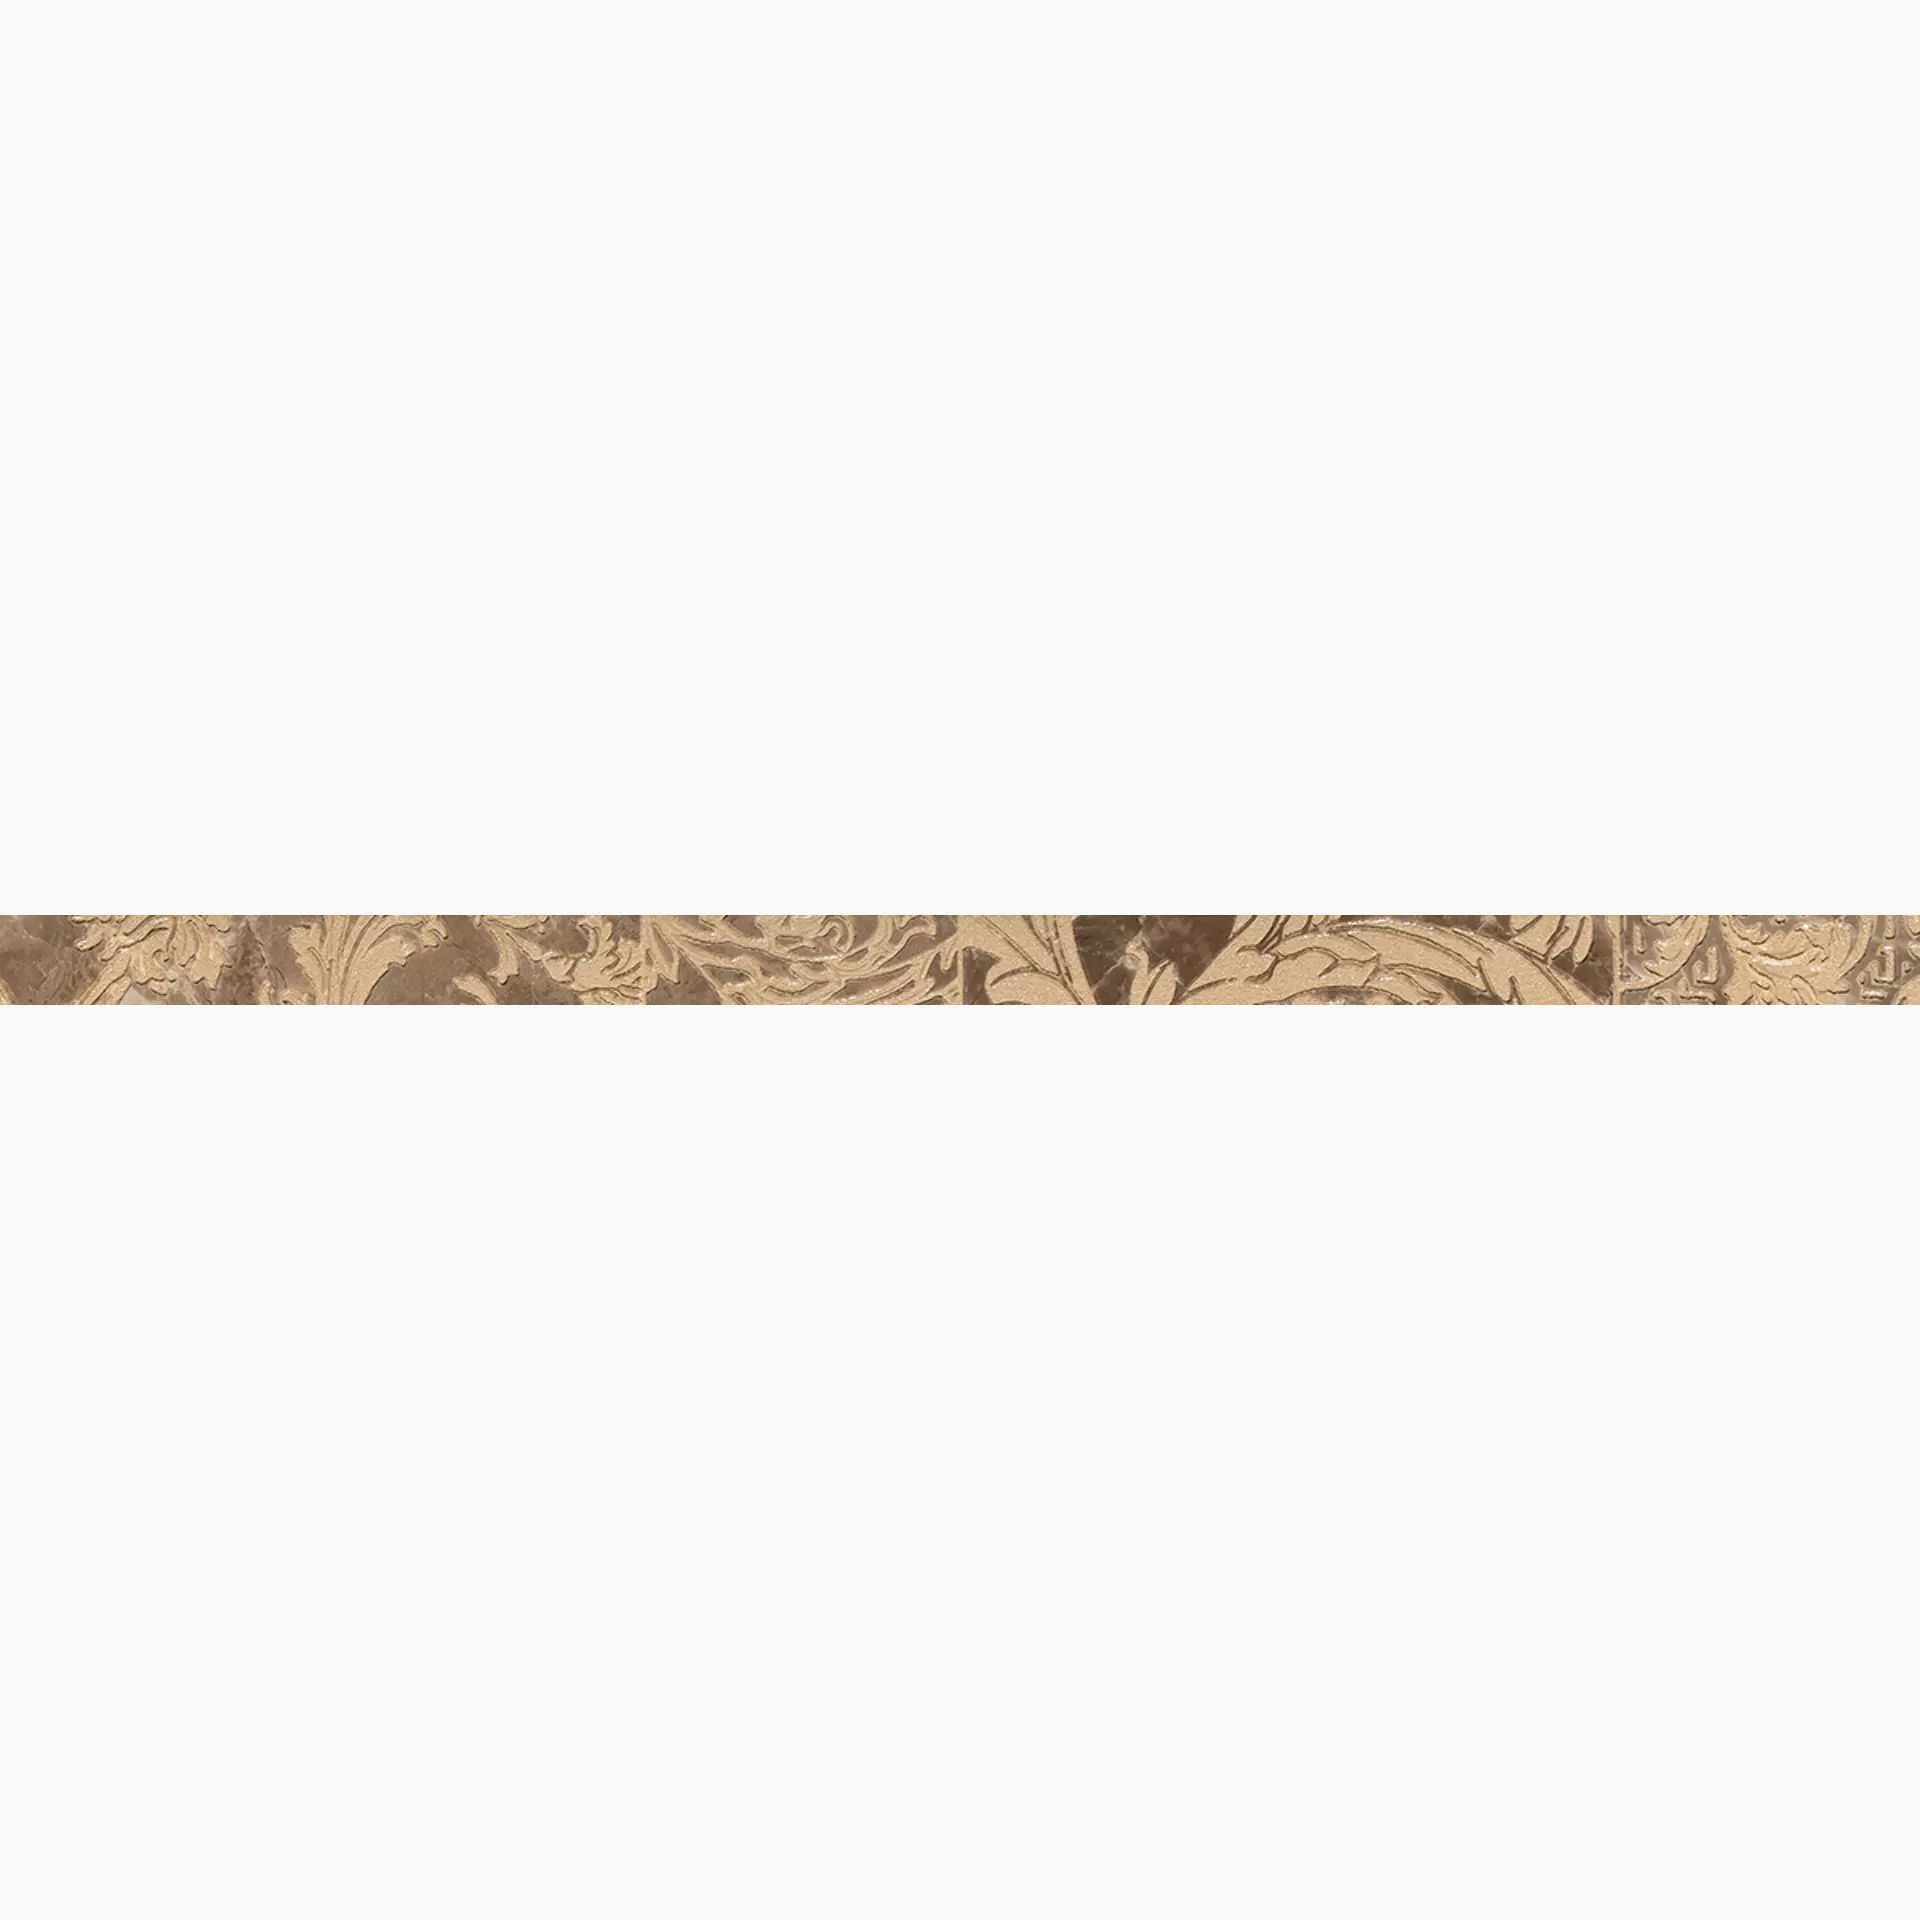 Versace Marble (Gar) Marrone Lux Marrone G0240747 2,7x58,5cm Band Patchwork rektifiziert 9,5mm